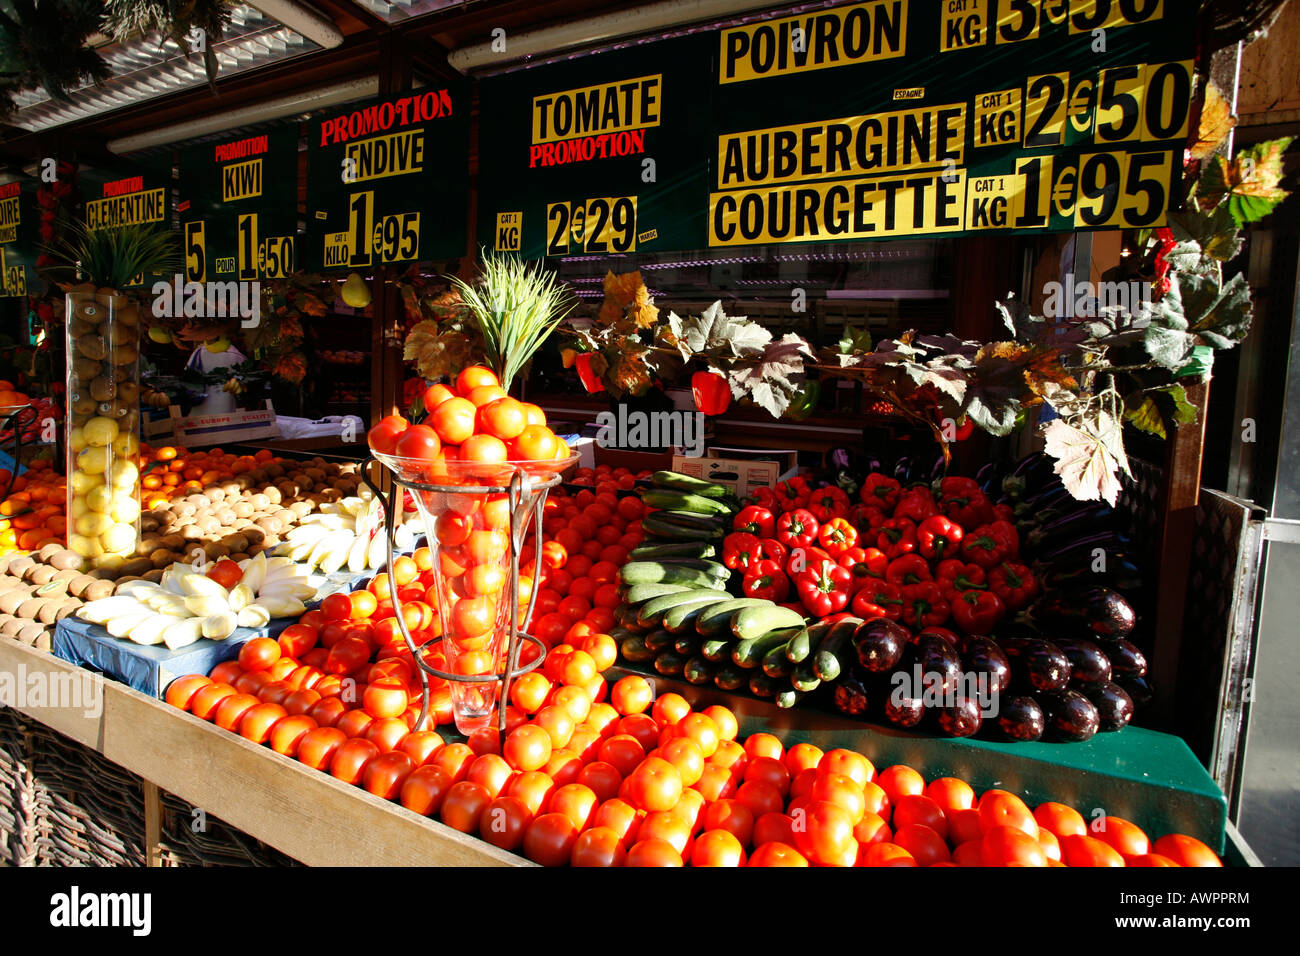 Store selling produce, Rue Montorgueil, Quartier Les Halles, Paris, France, Europe Stock Photo